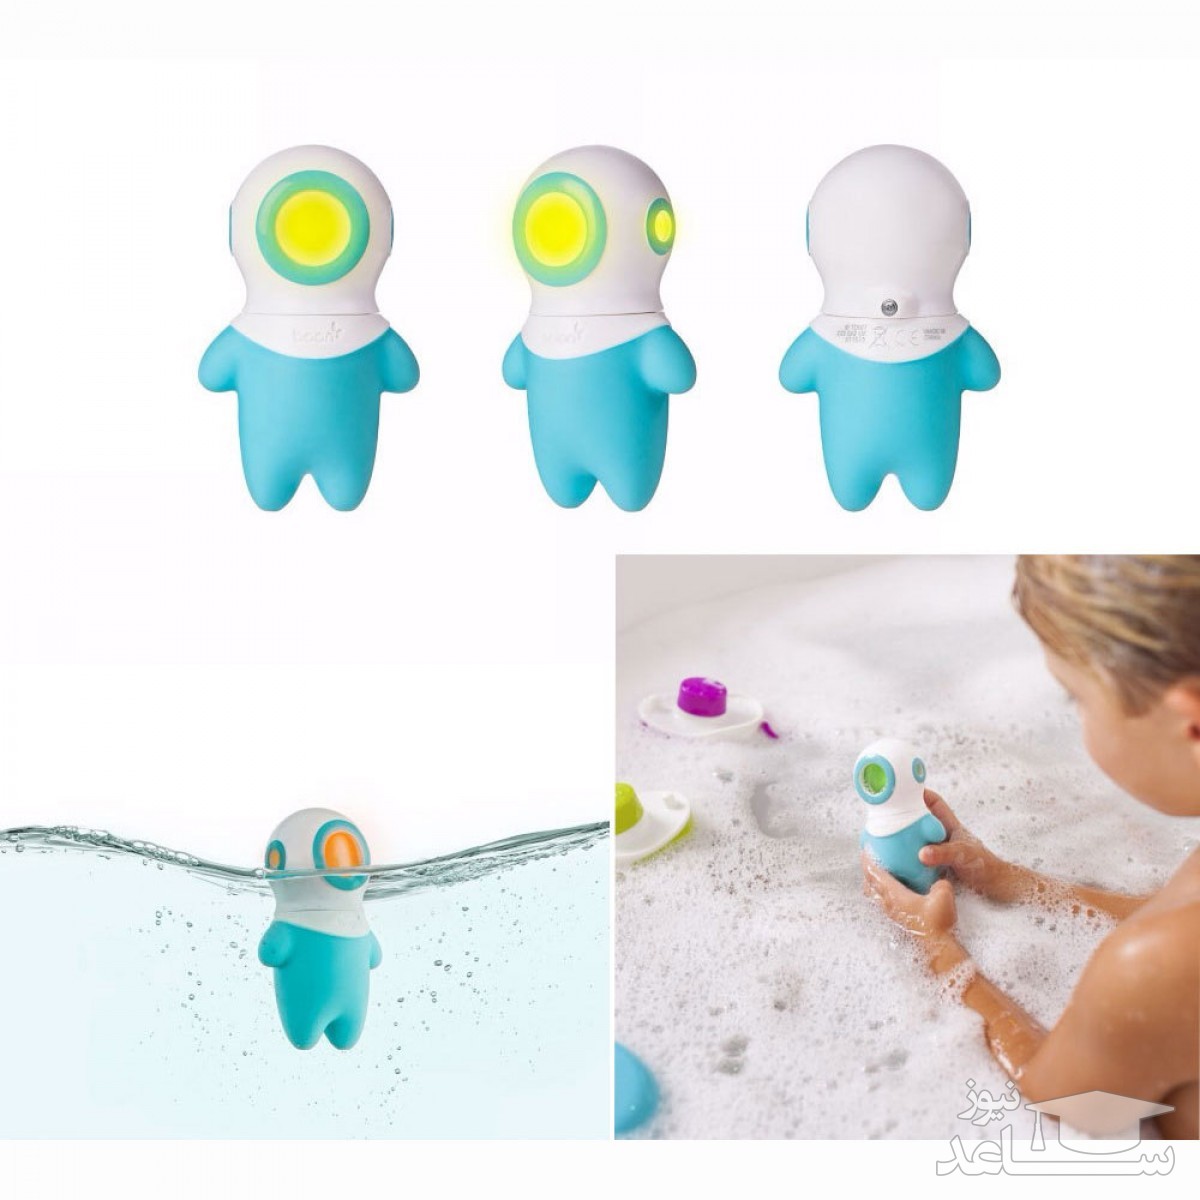 هشدار! لطفا کودکان را با اسباب بازی پلاستیکی به حمام نبرید!